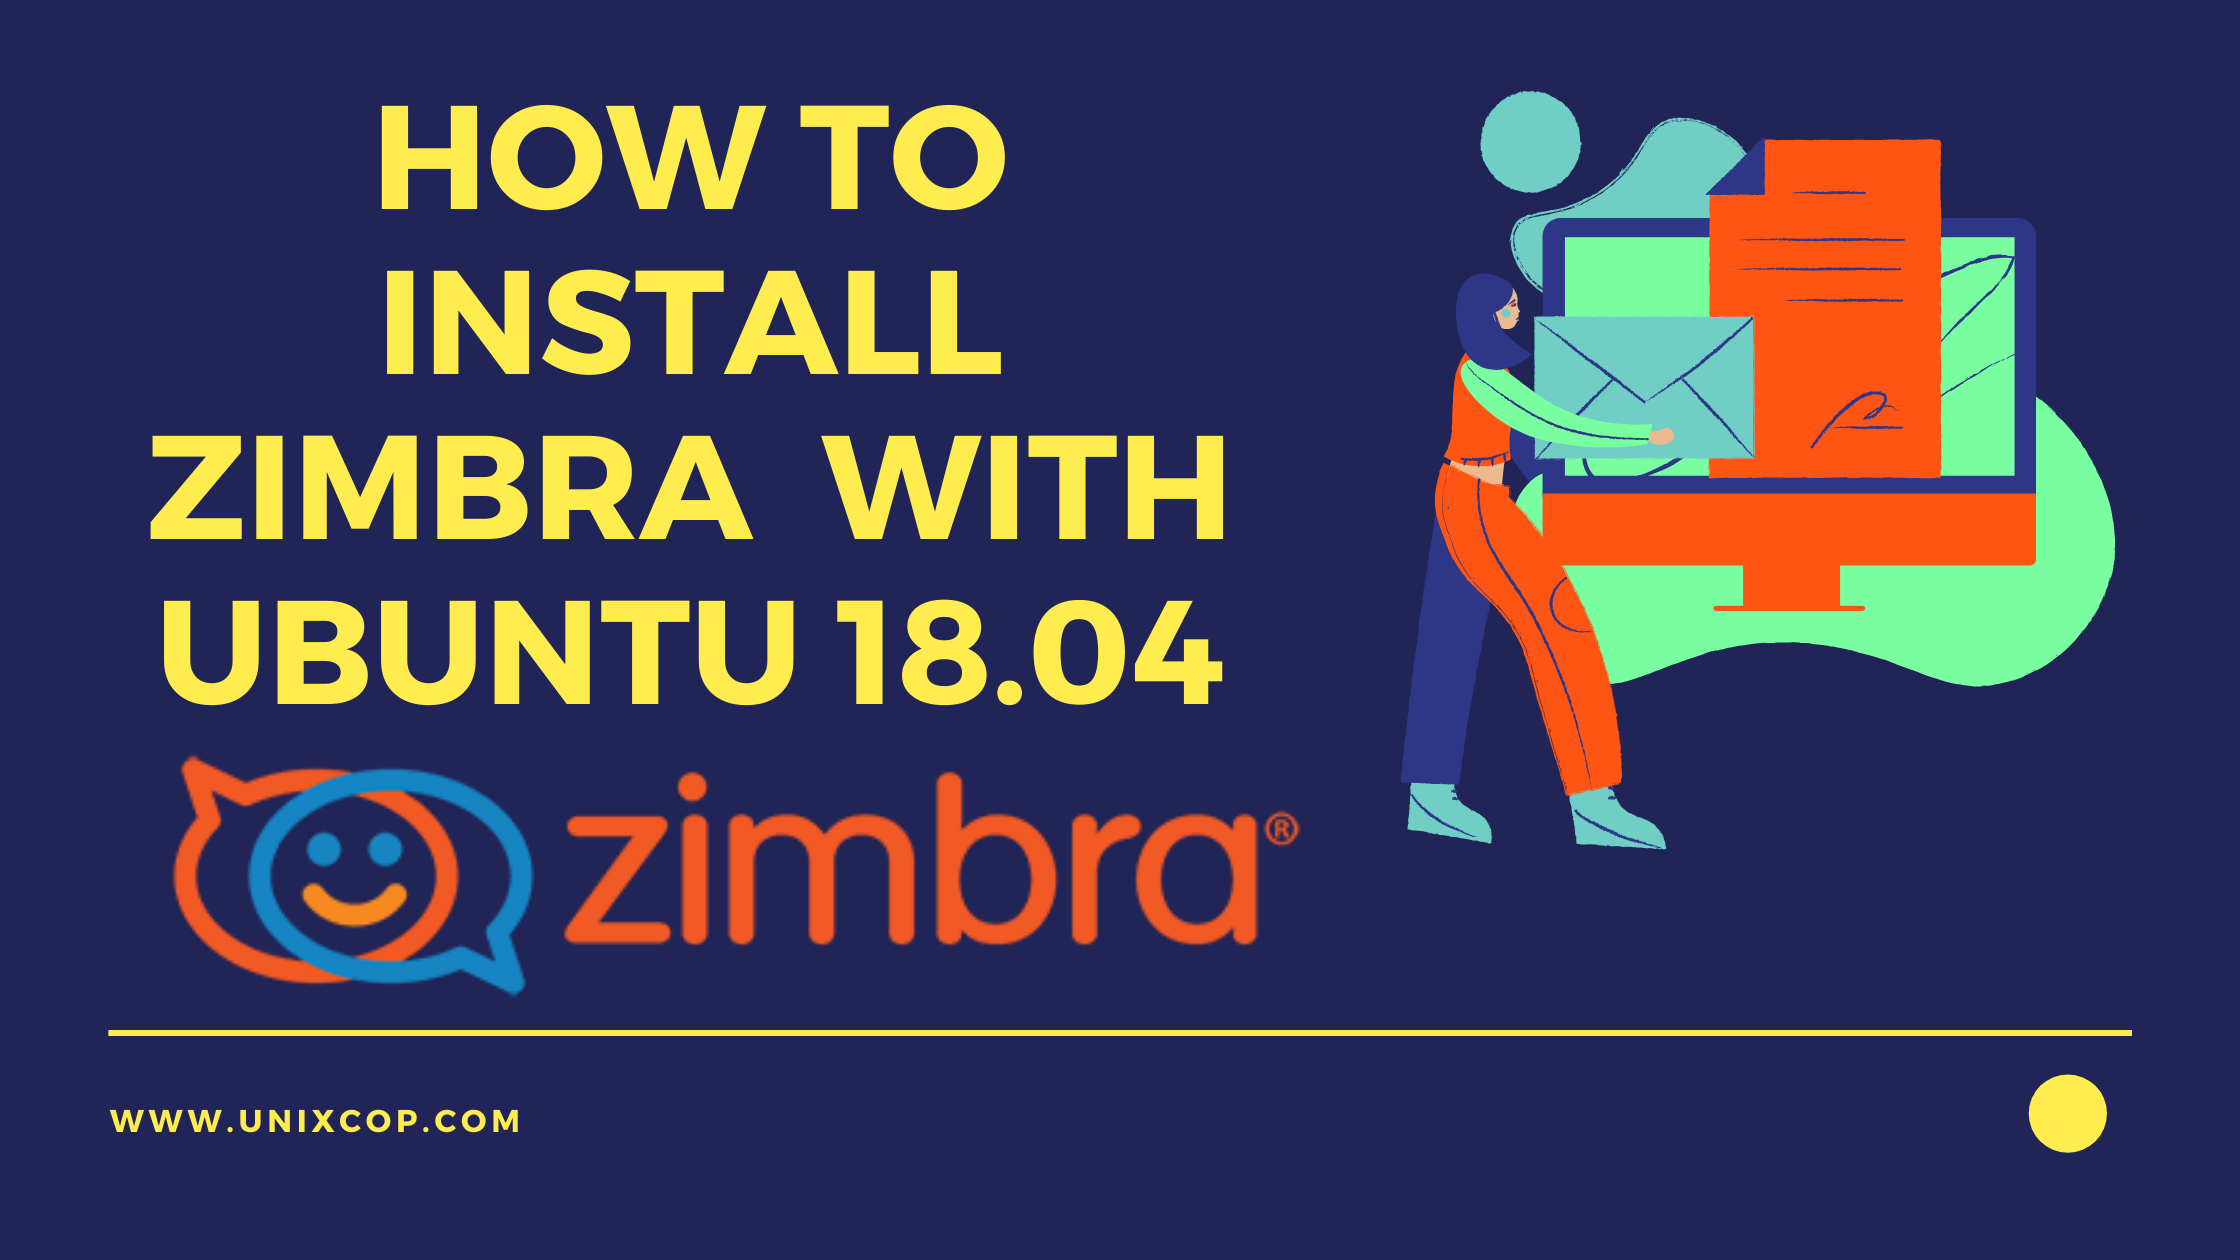 Zimbra with Ubuntu 18.04